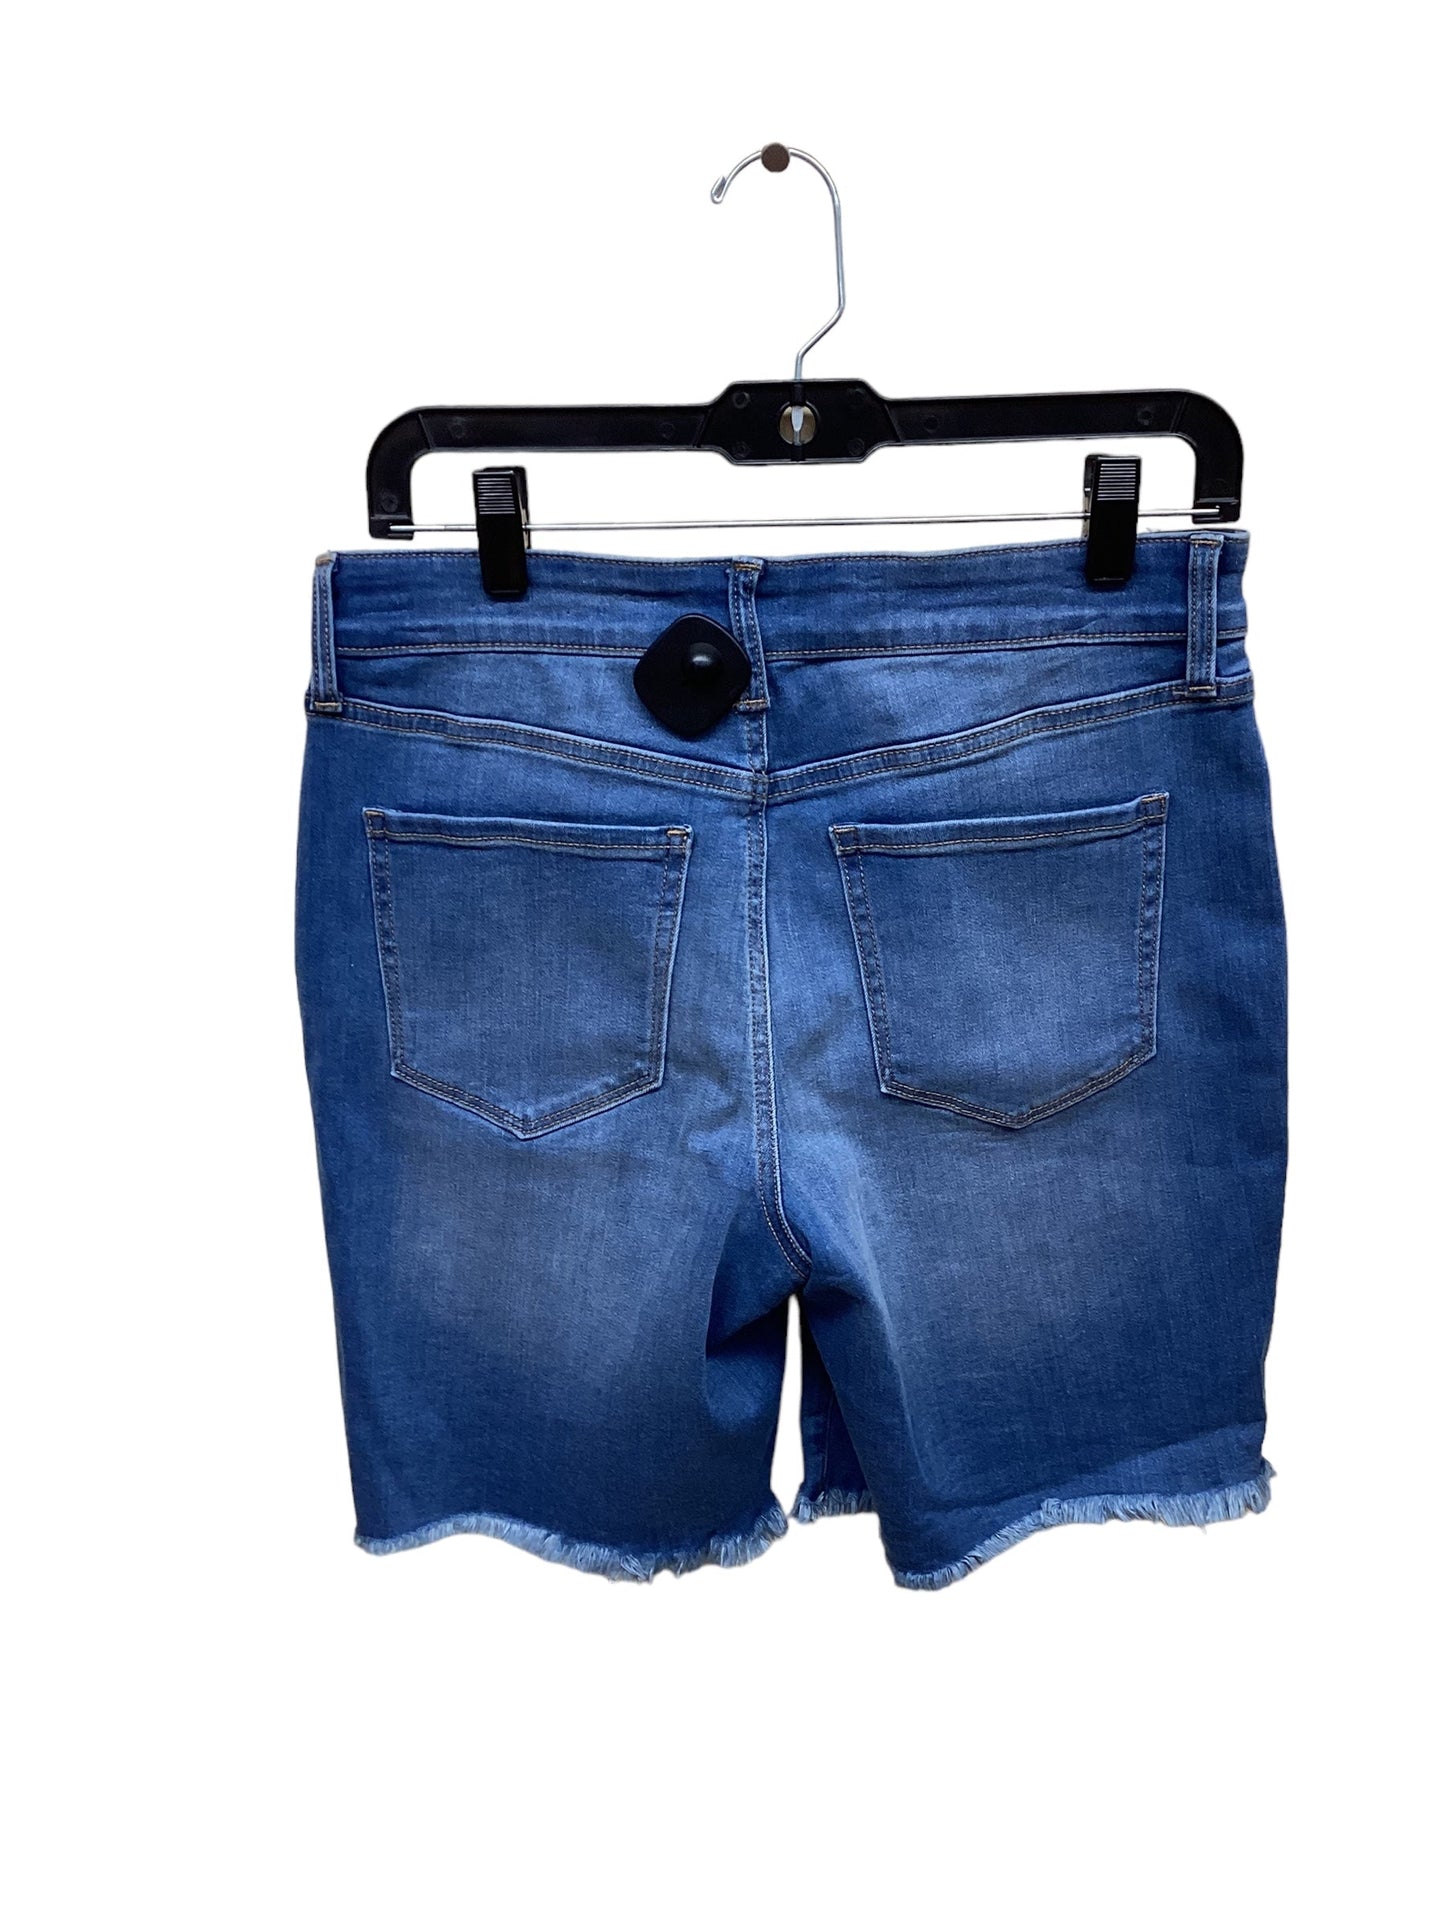 Blue Denim Shorts Nine West, Size 6